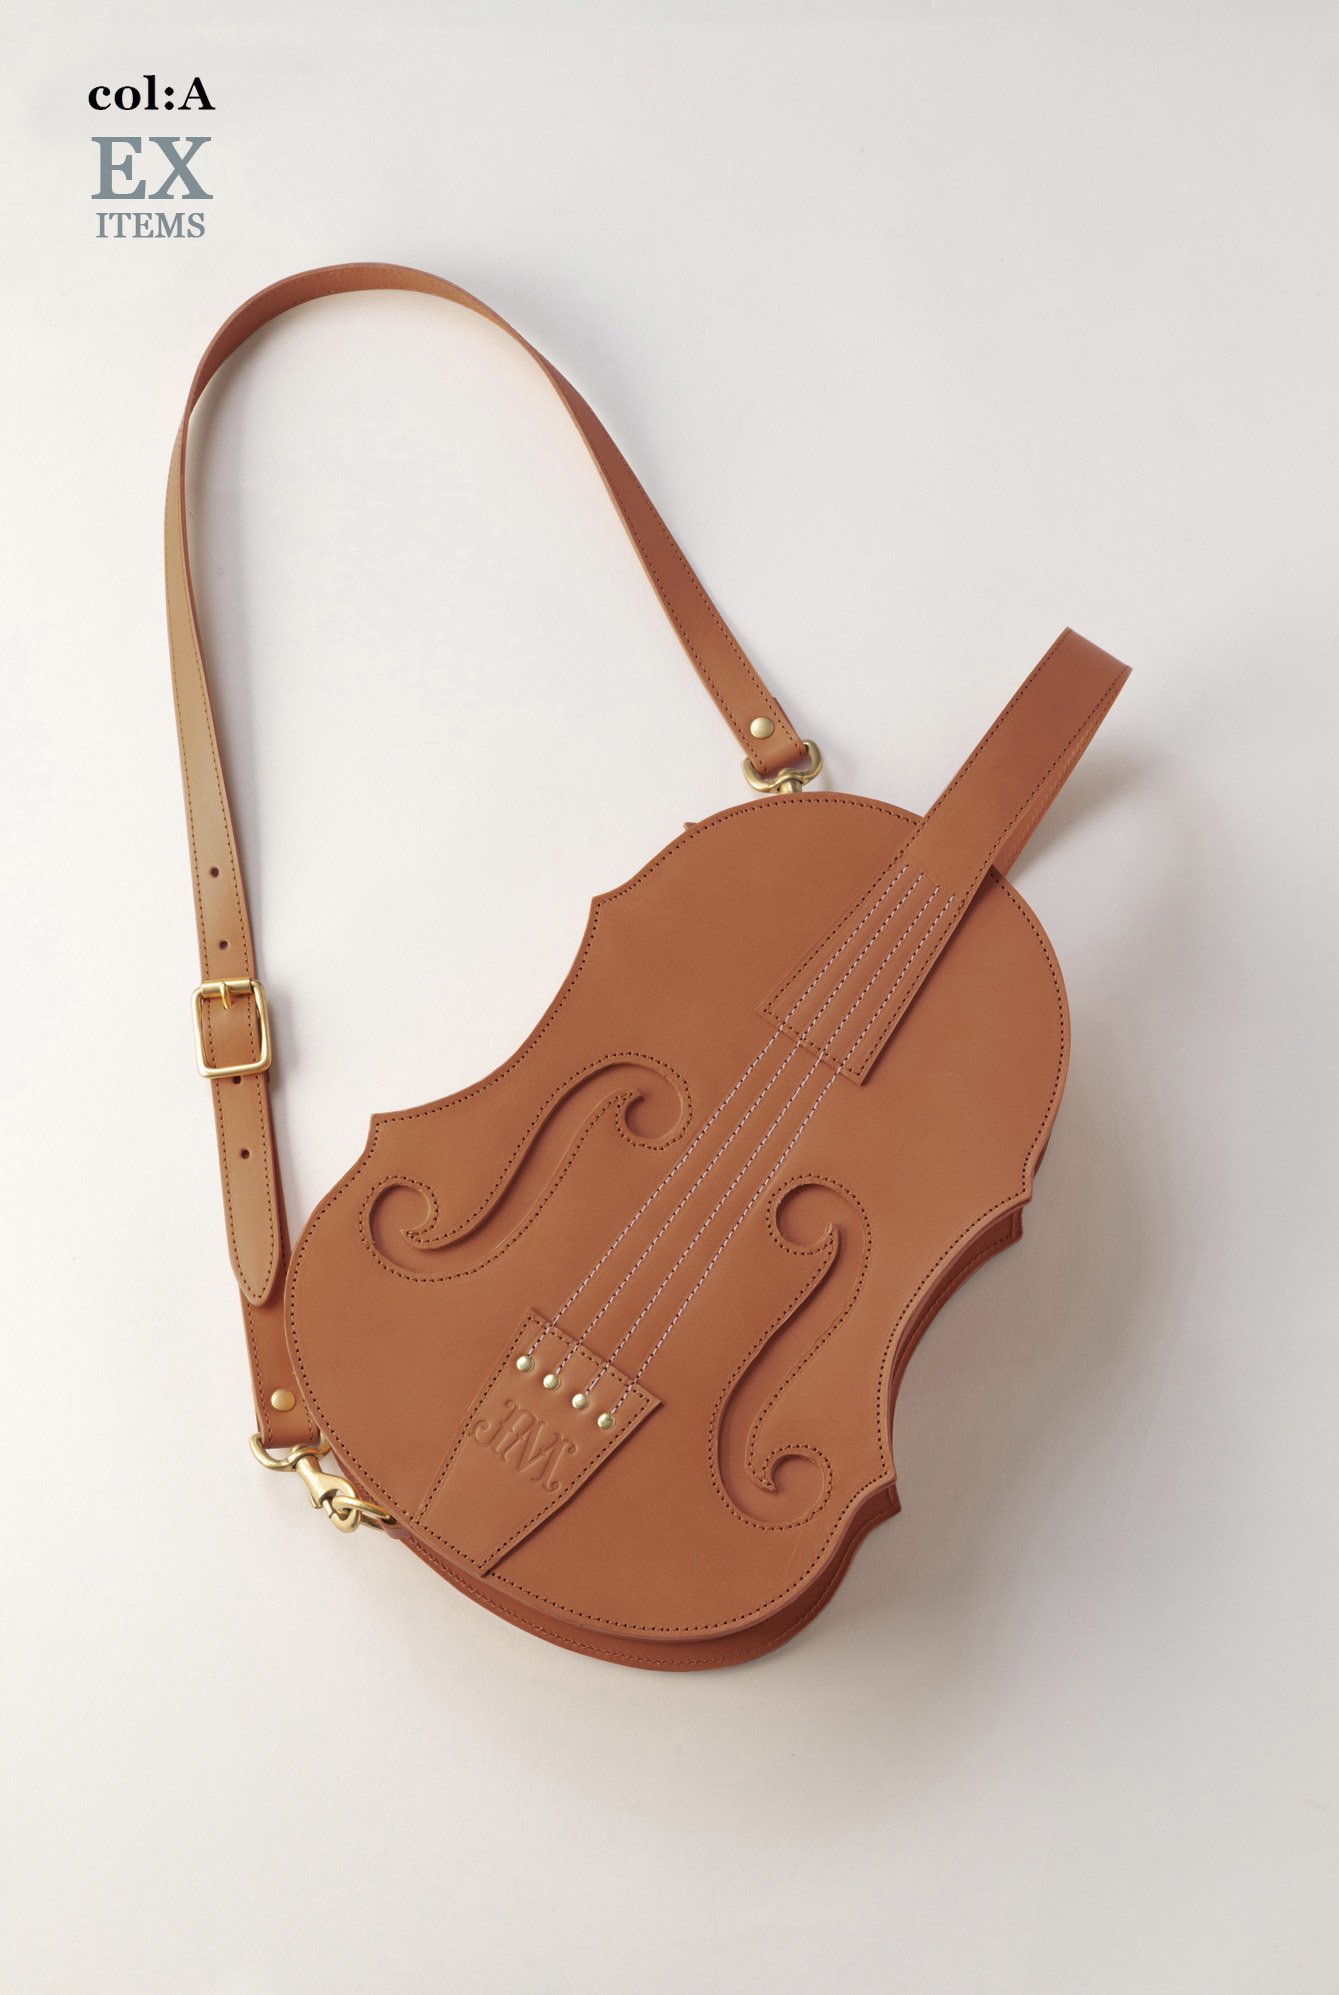 バイオリンバッグの通販可能商品 - SHOPS